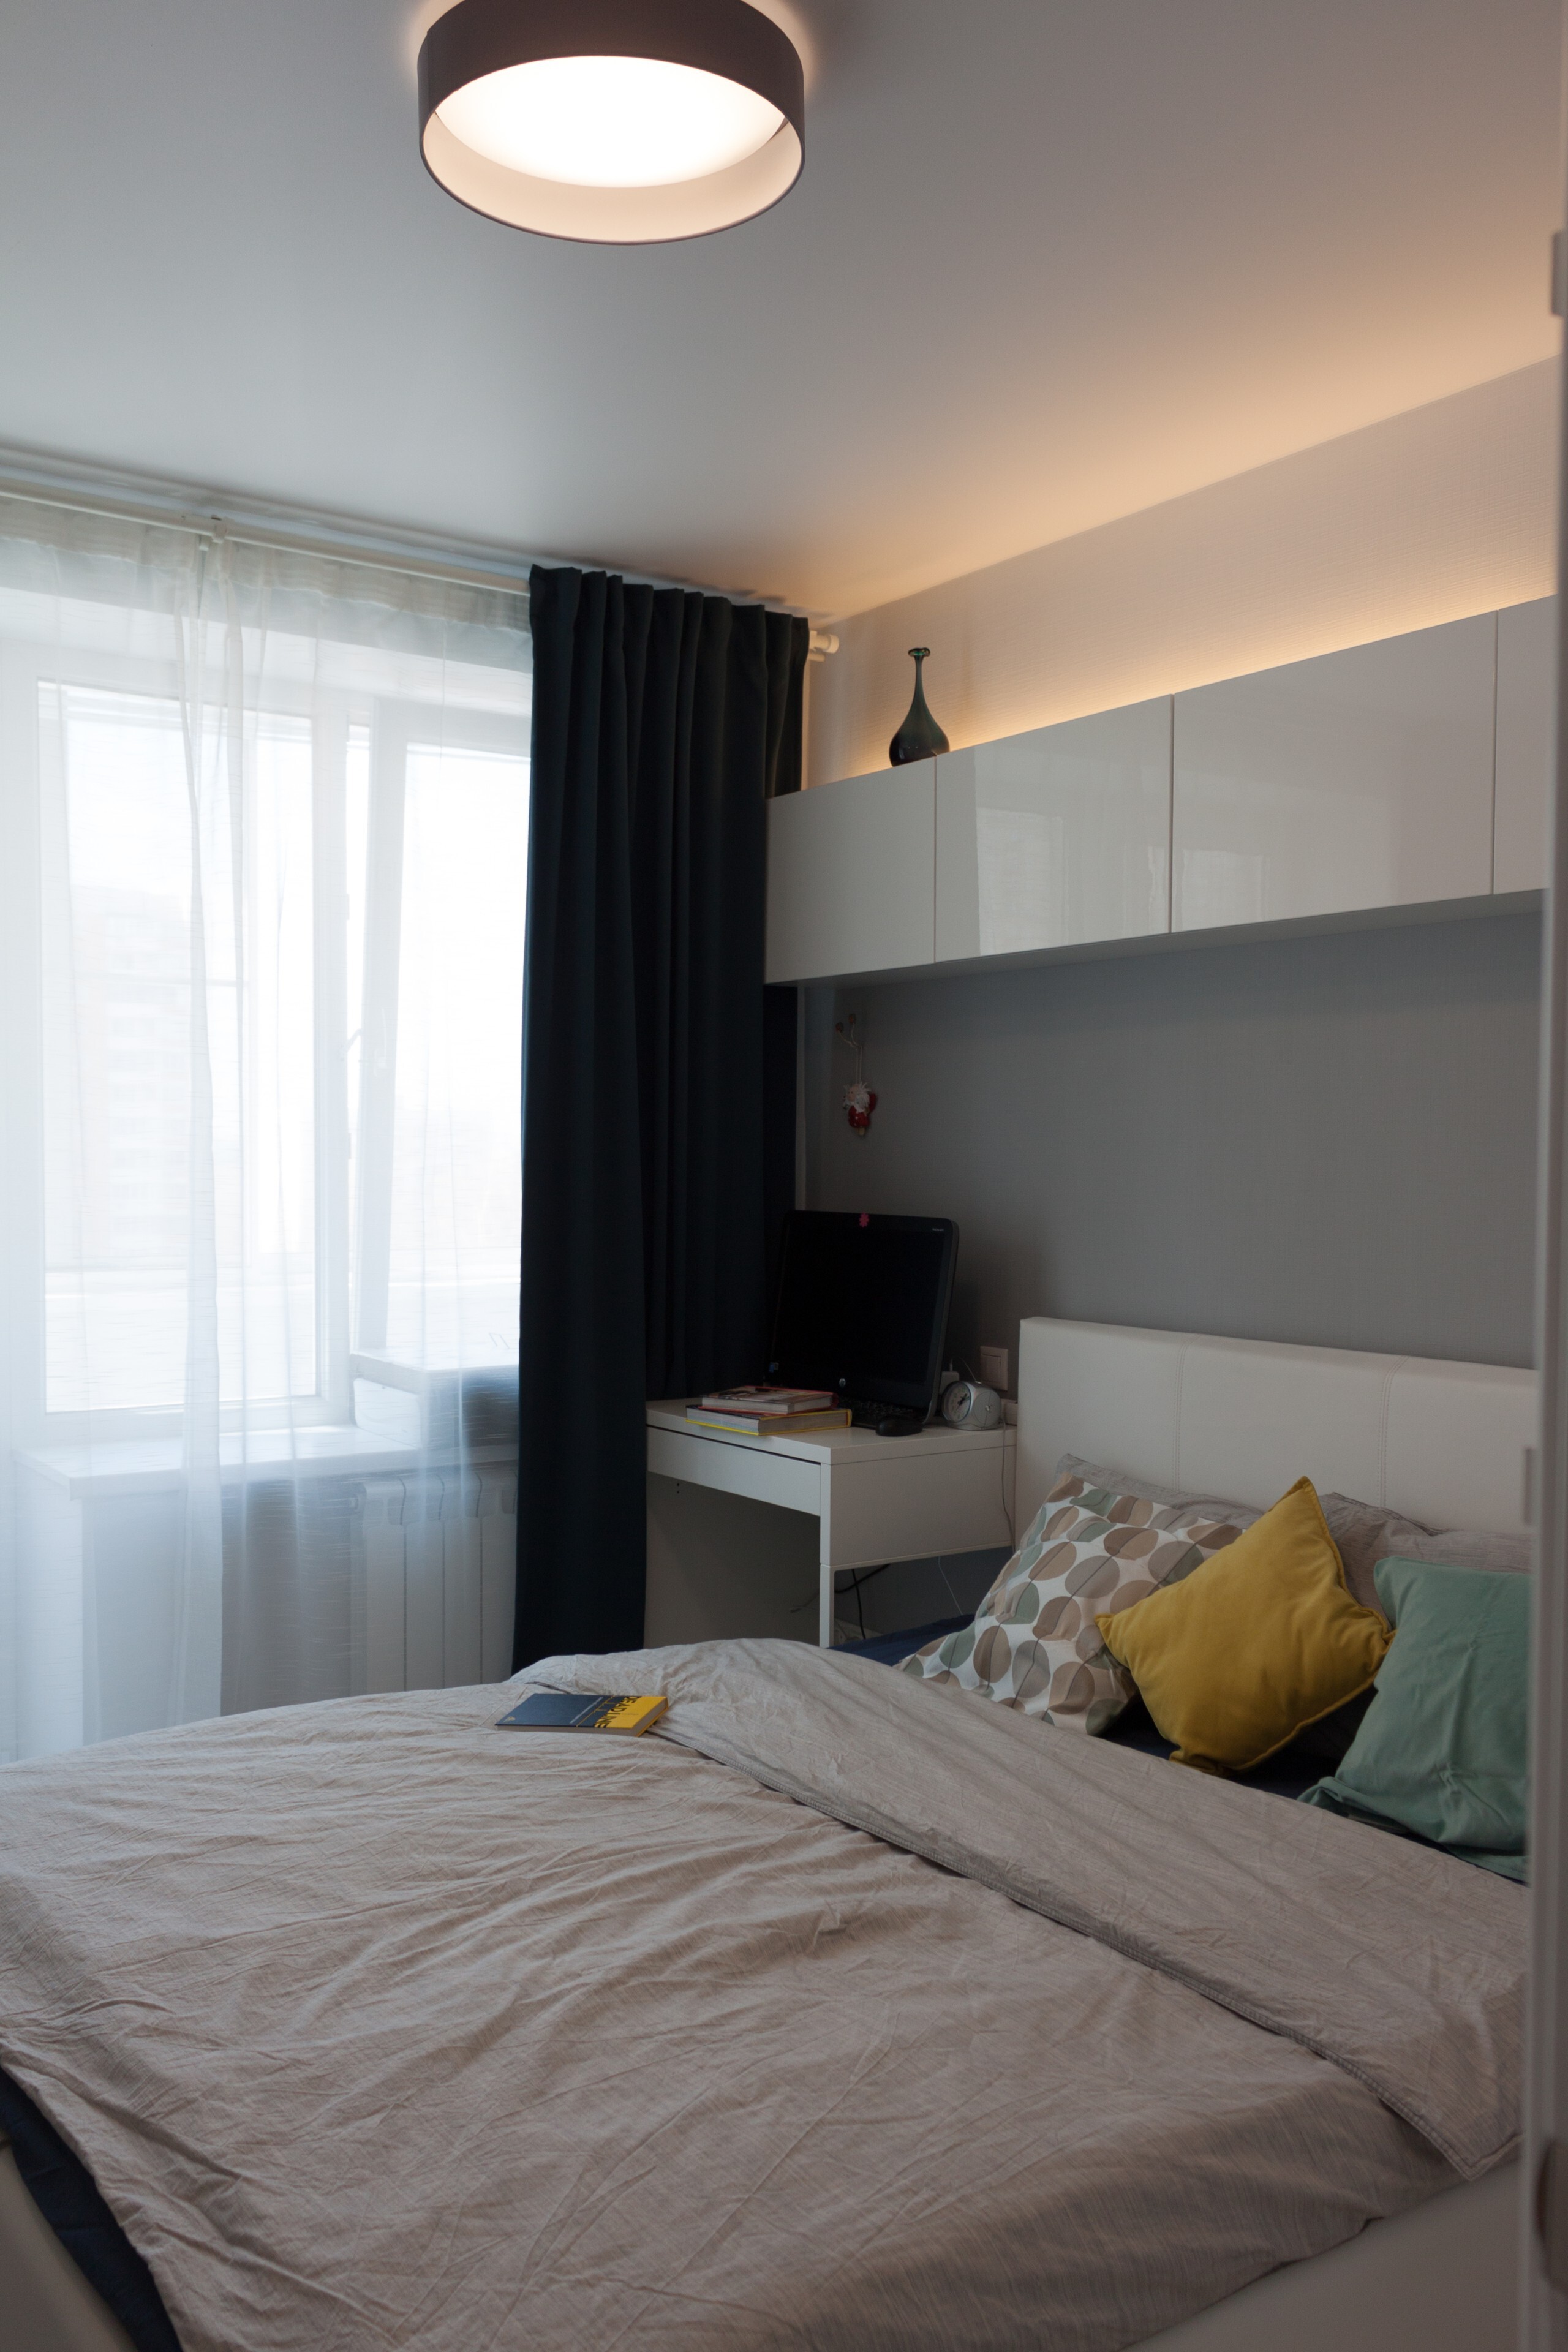 Интерьер спальни c рабочим местом, подсветкой светодиодной и светильниками над кроватью в современном стиле